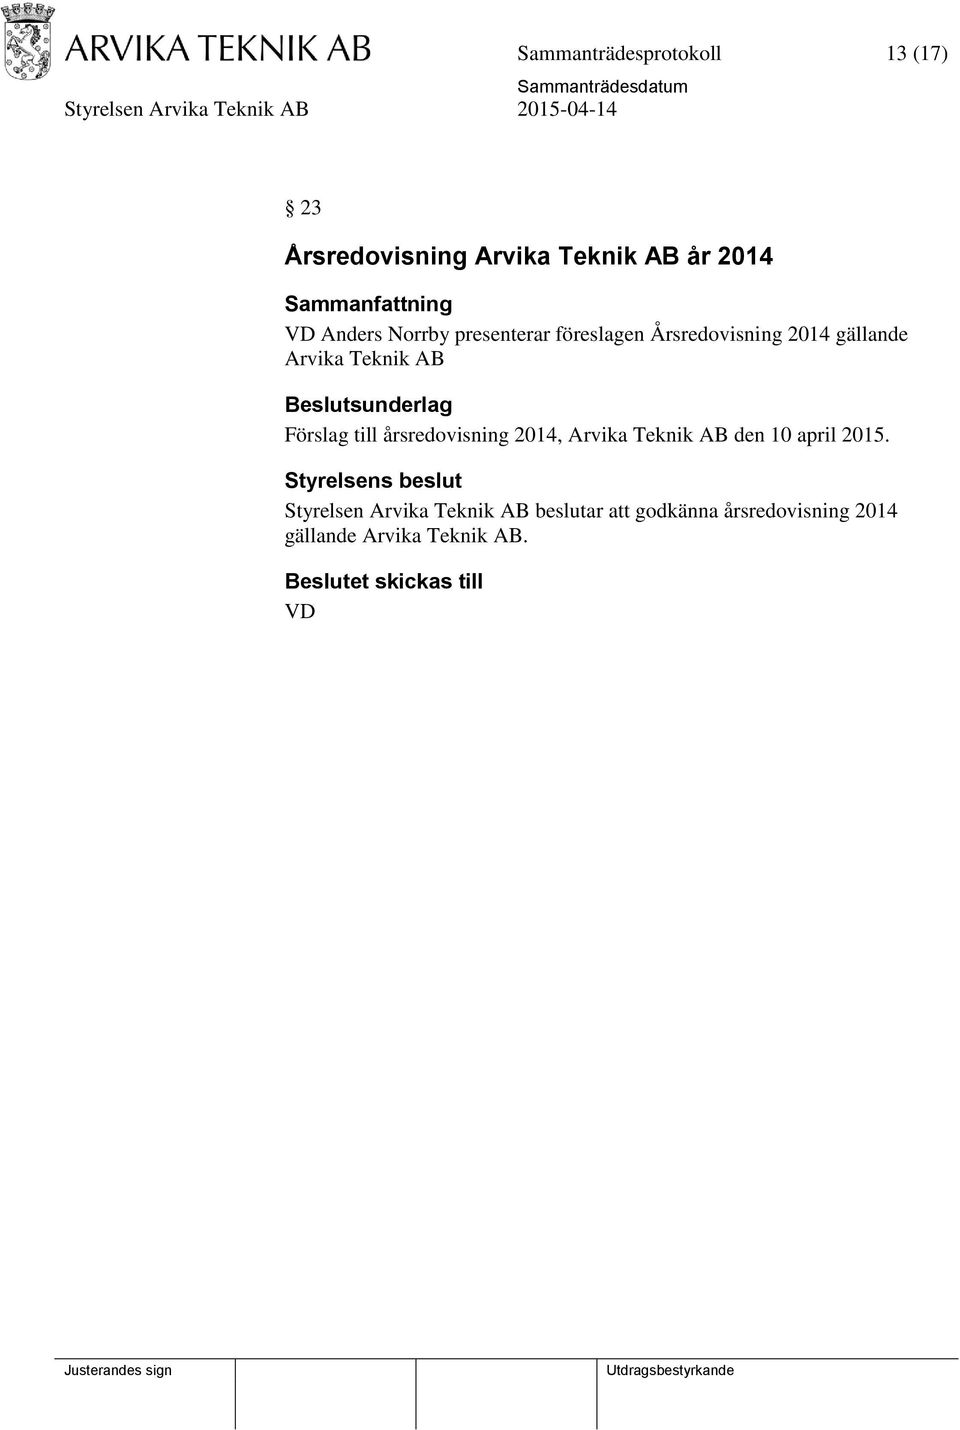 Förslag till årsredovisning 2014, Arvika Teknik AB den 10 april 2015.